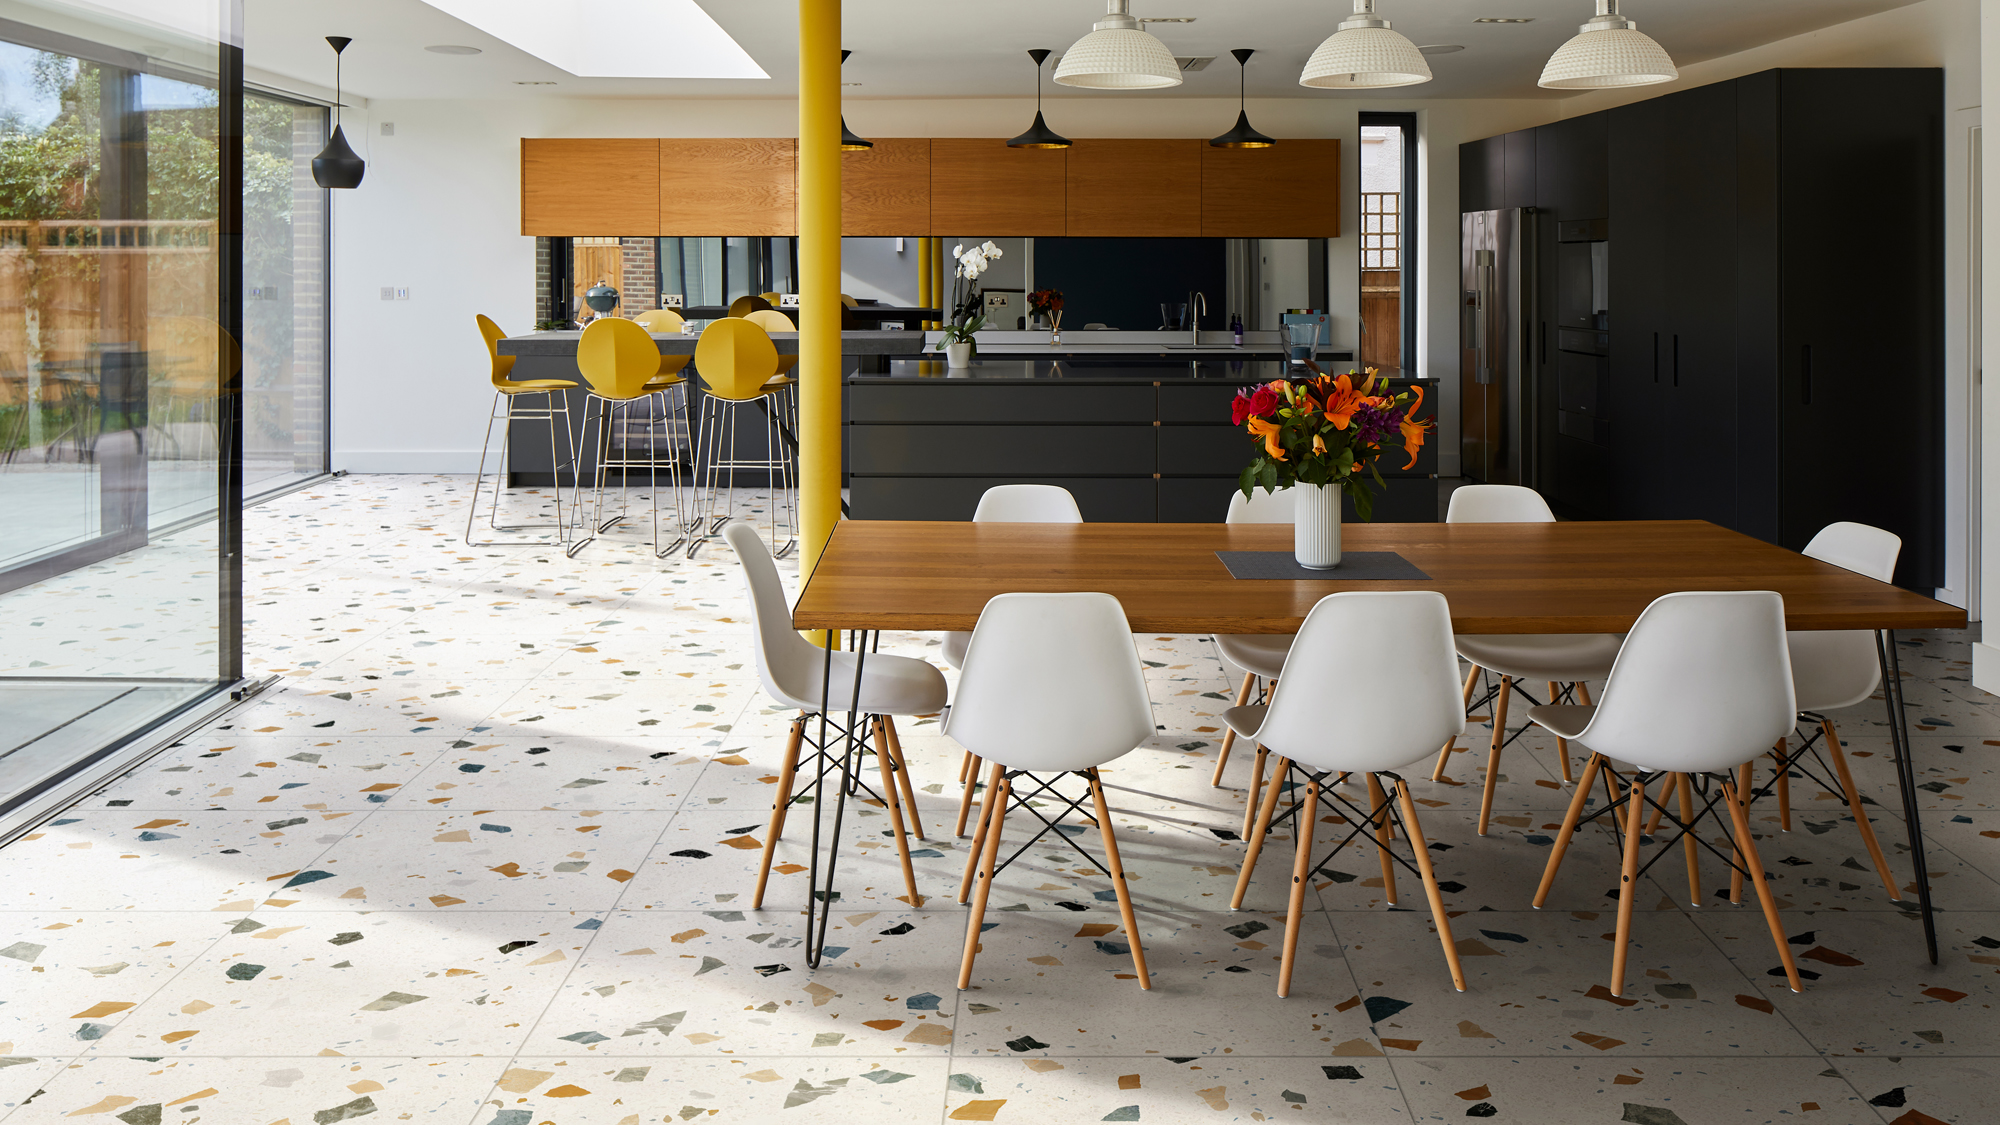 Kitchen Floor Tile Ideas 14 Durable, Ceramic Tiles For Kitchen Floor Ideas